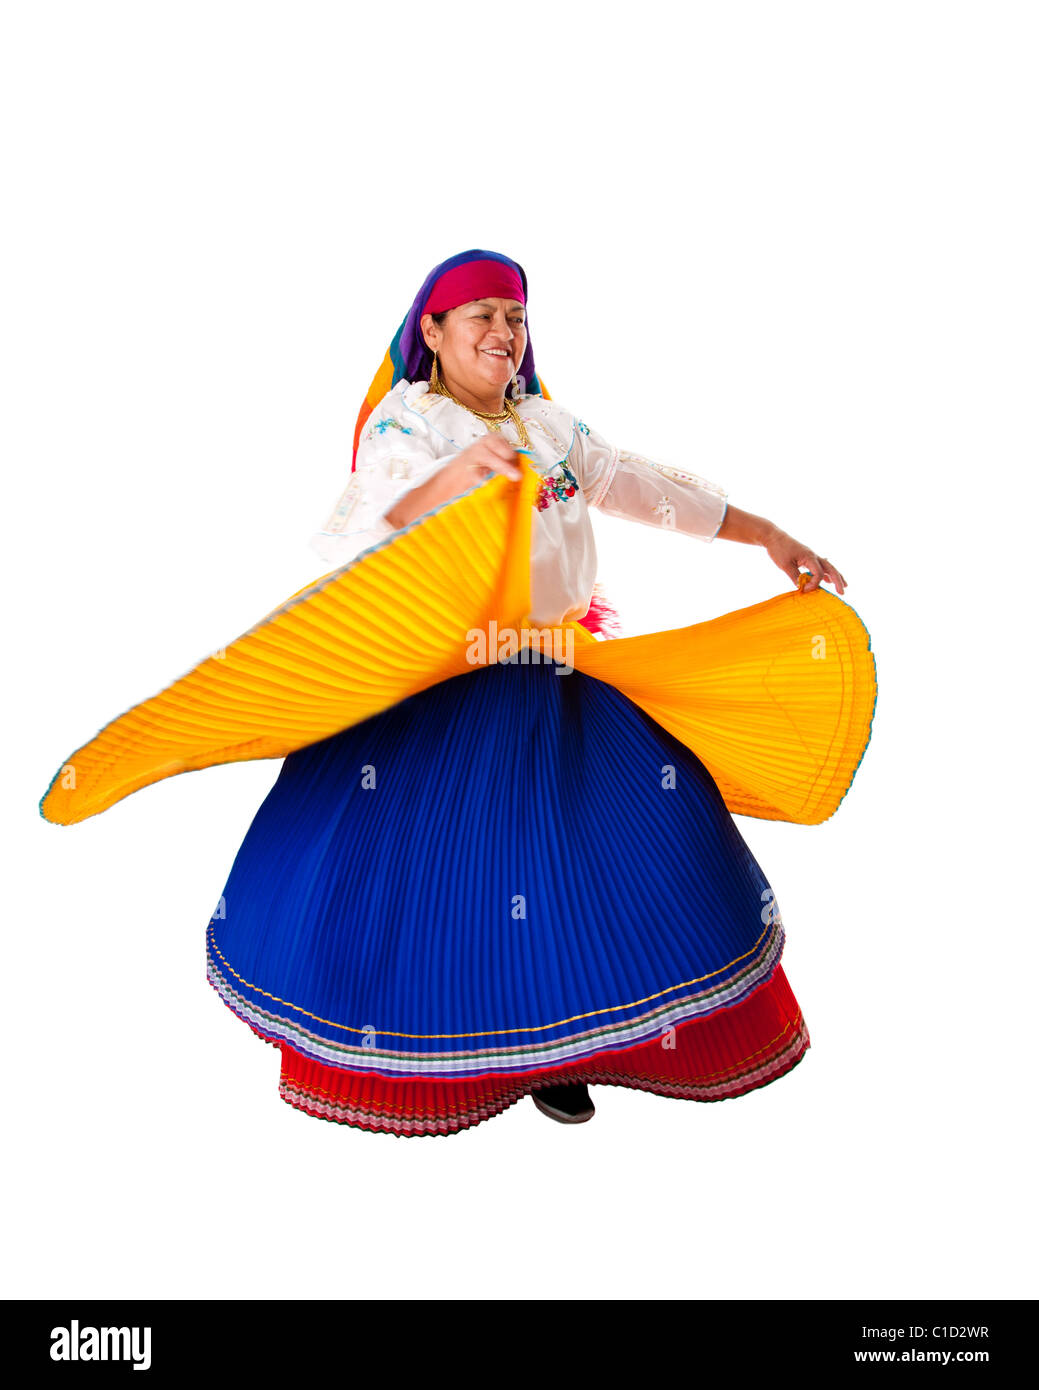 Gitane d'Amérique latine de l'Amérique du Sud habillés en vêtements de folklore de l'Équateur, la Colombie, la Bolivie ou le Venezuela, la danse virevoltante. Banque D'Images